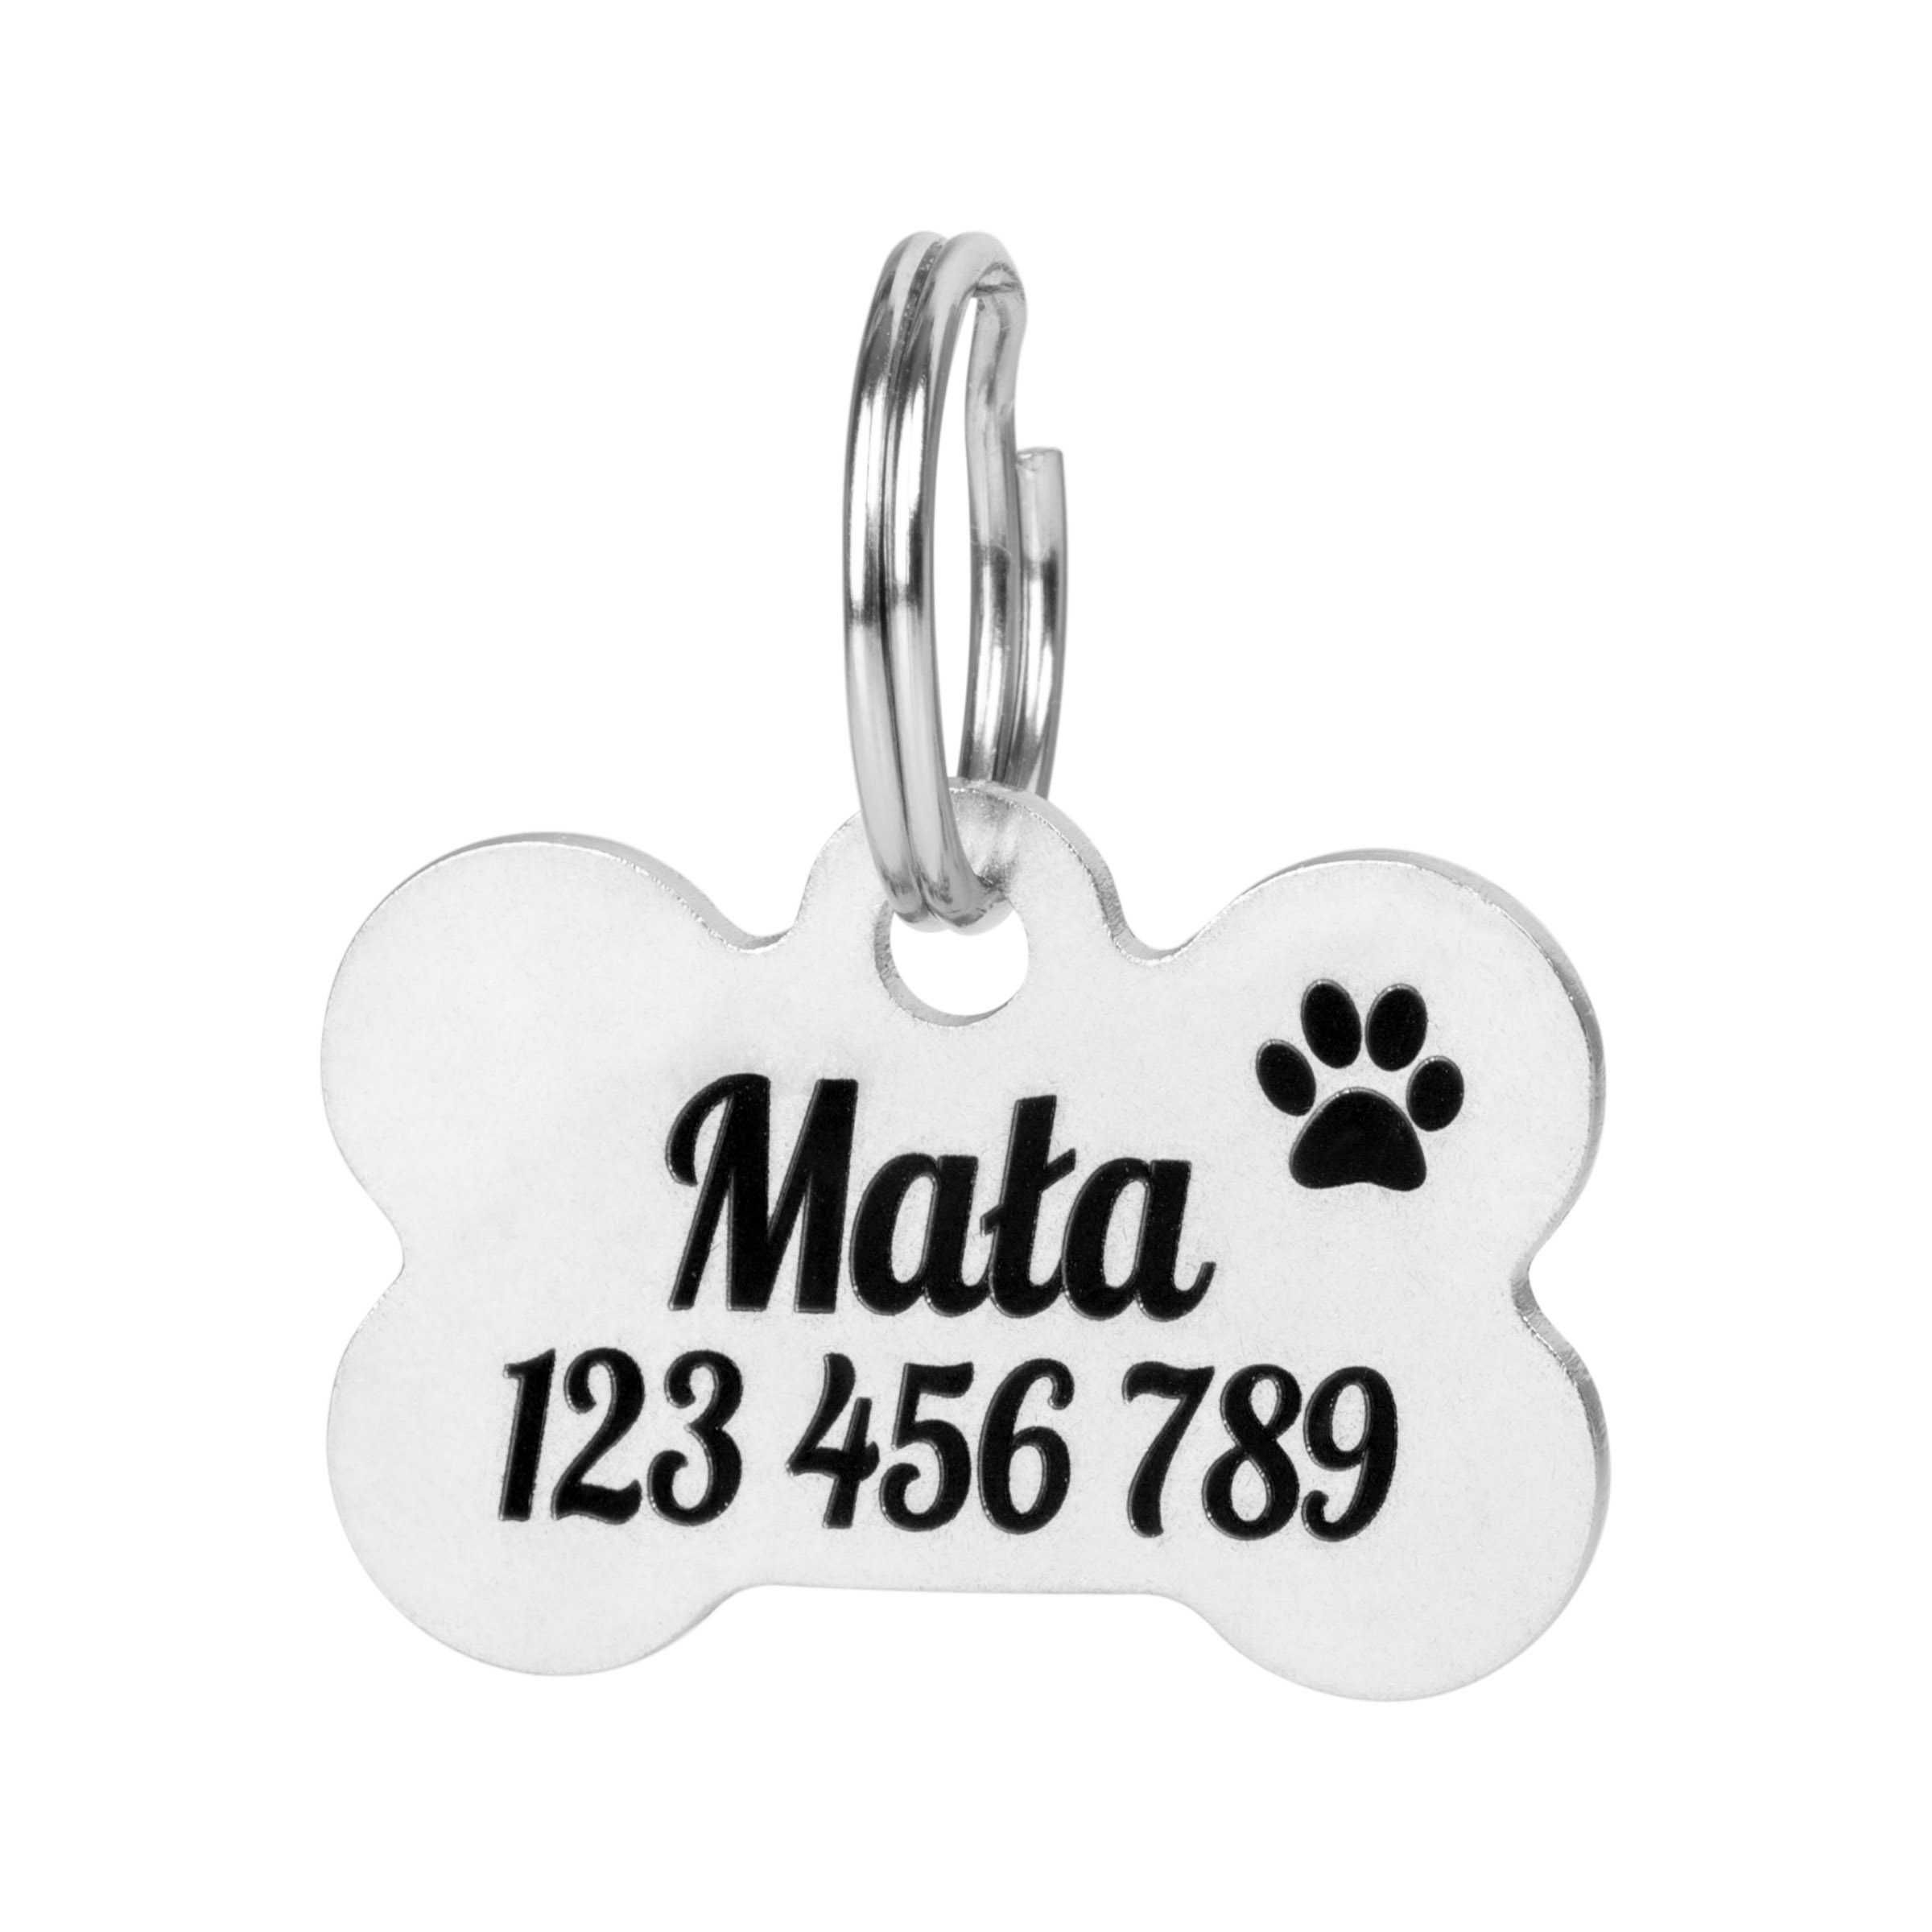 Metalowy identyfikator, adresówka dla psa/kota - 2 sztuki